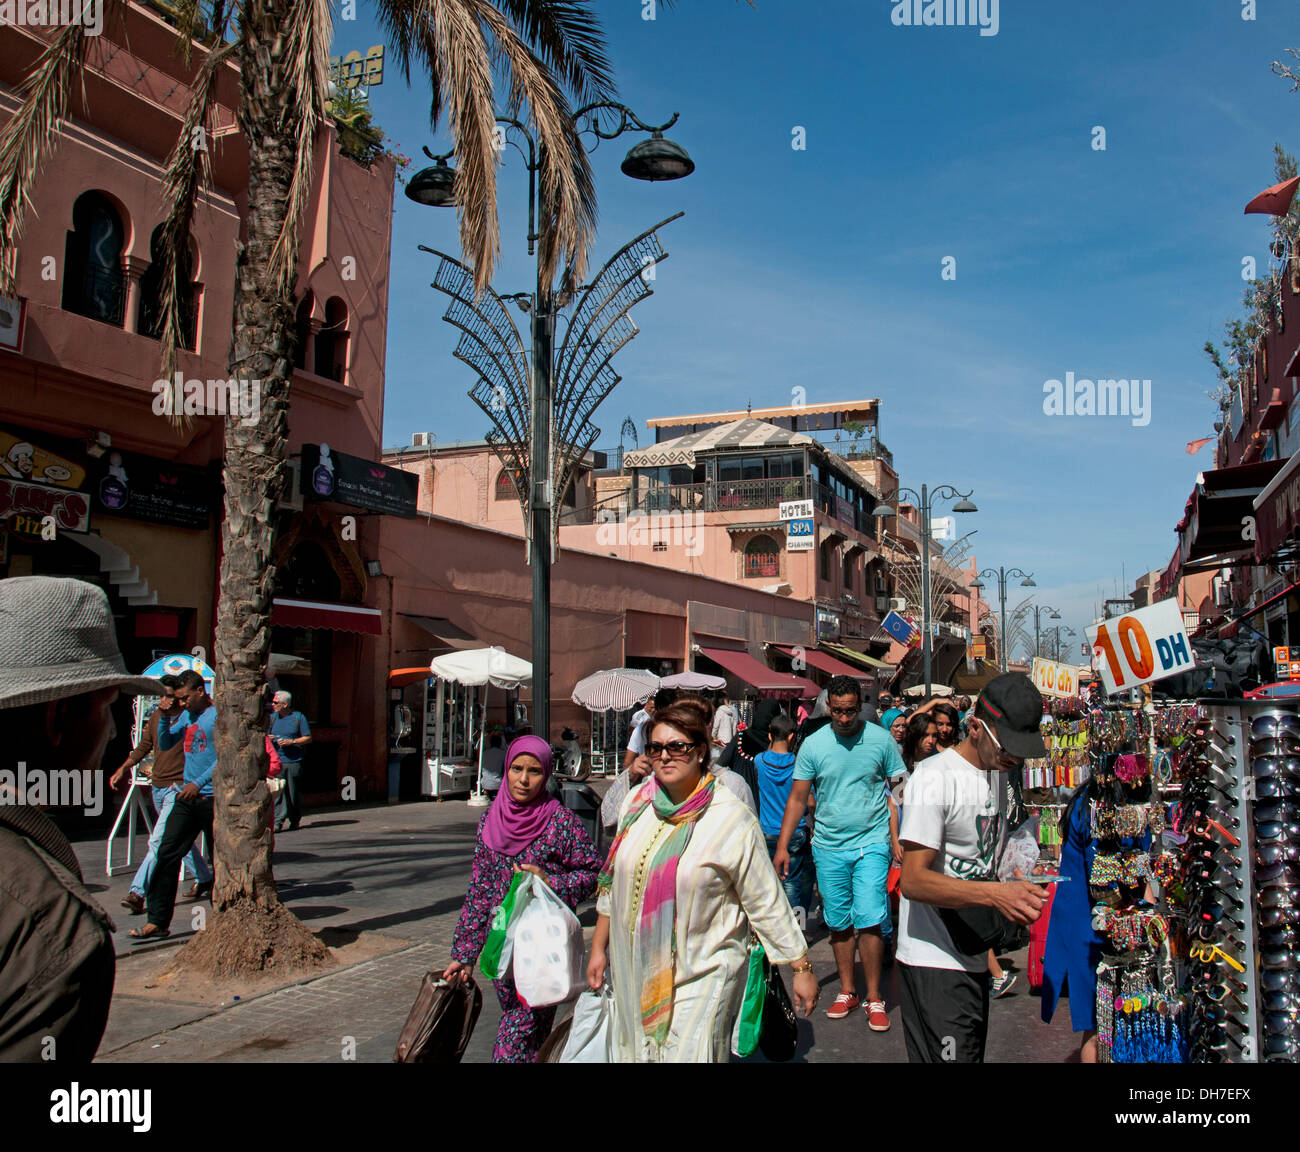 Marruecos Marrakech Medina calle comercial mujer Foto de stock